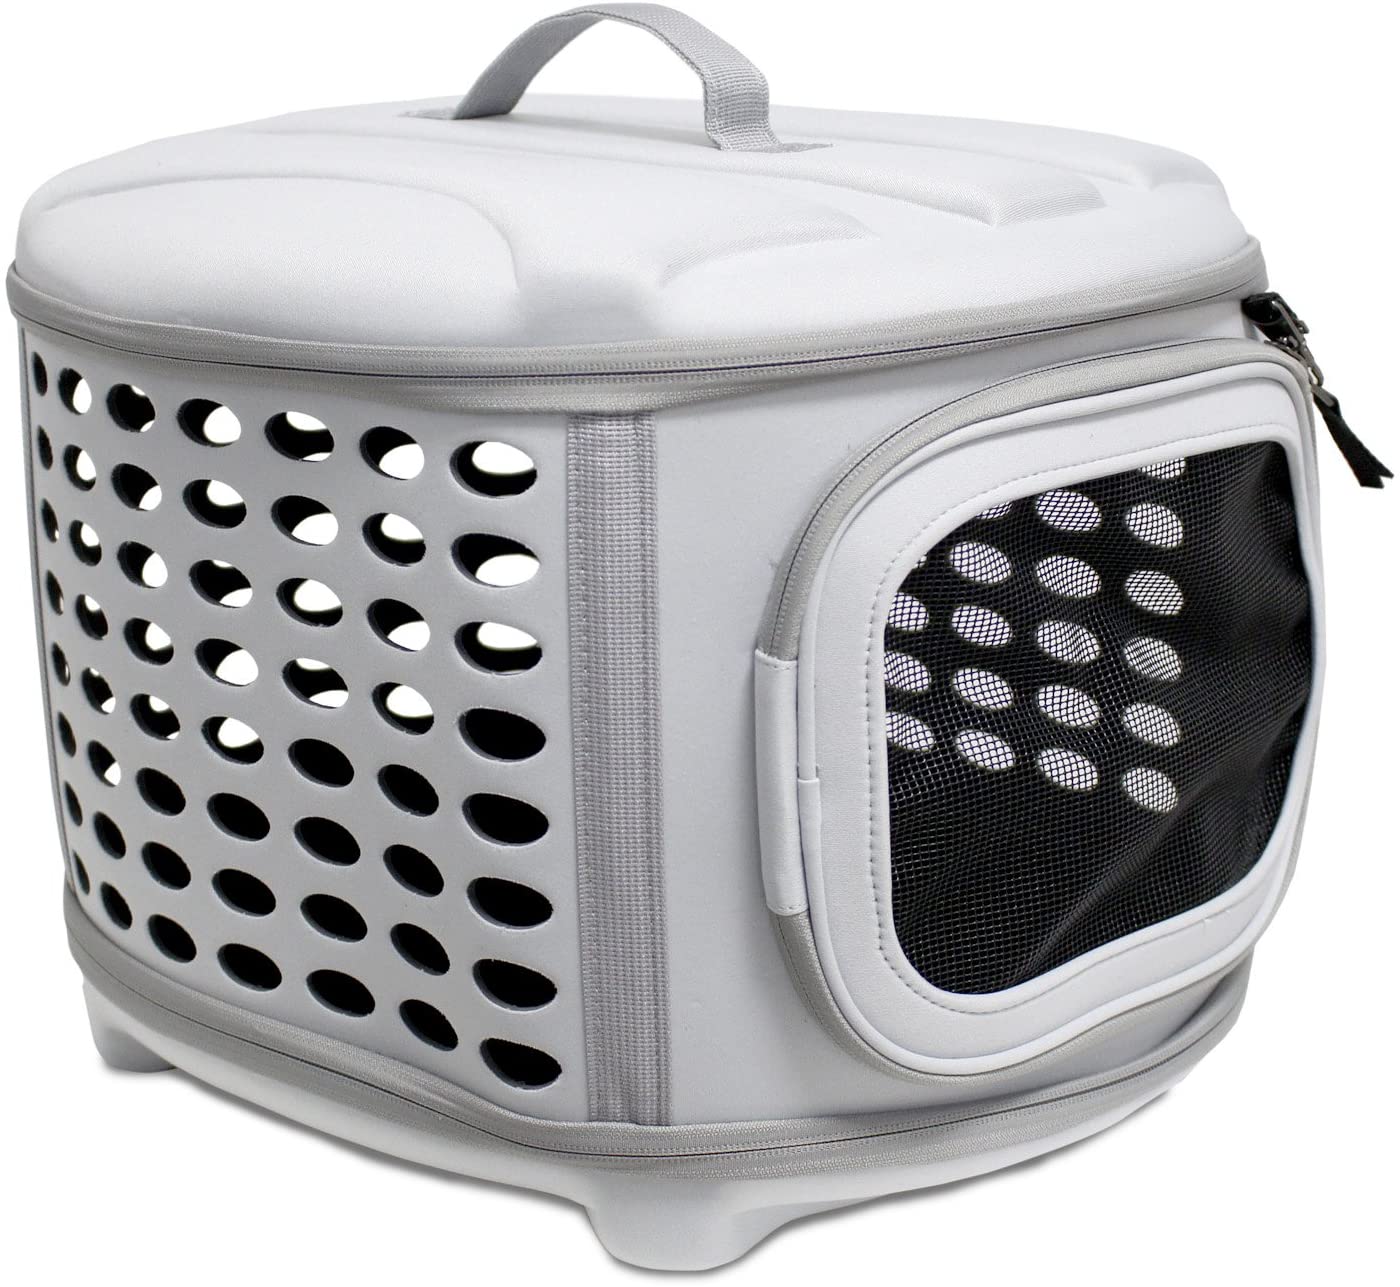  YATEK Transportin para Perros y Gatos Plegable, Lavable, Recomendado para Mascotas de hasta 5kg Color Gris Claro 